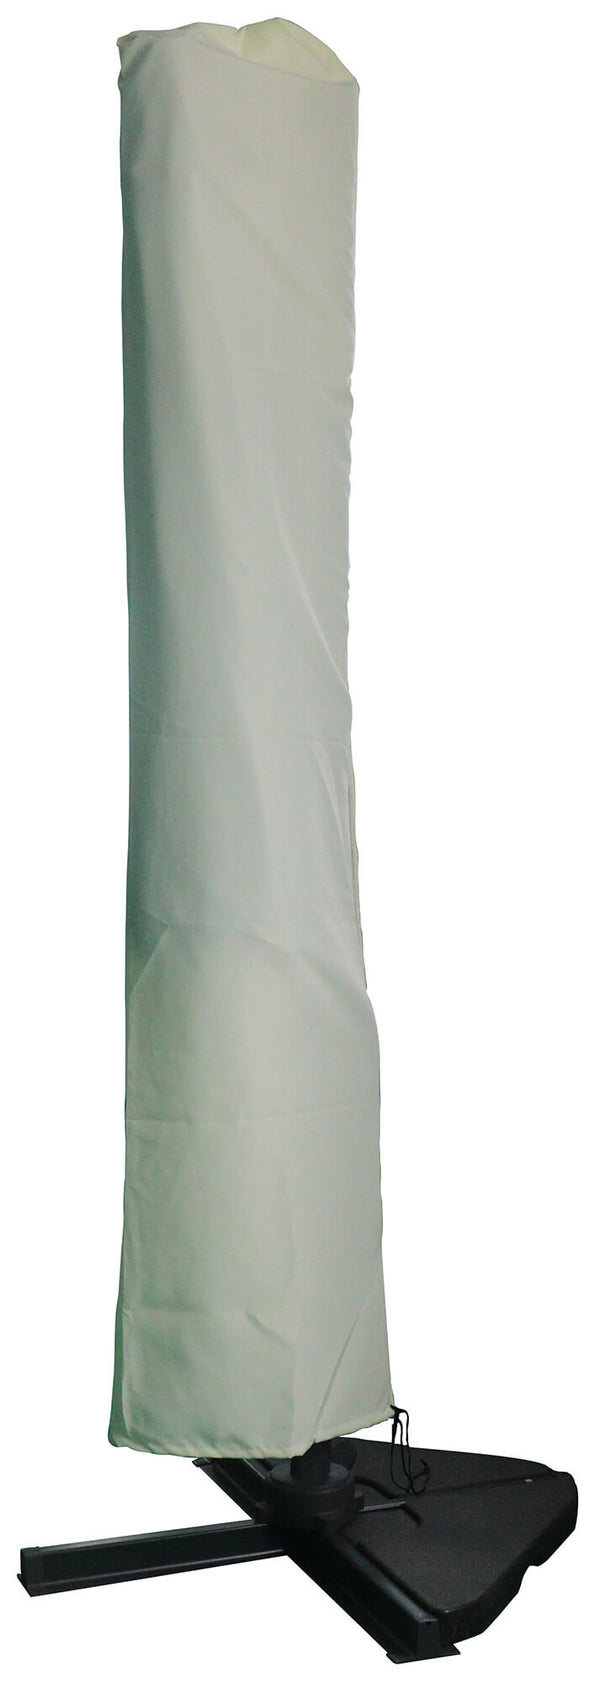 acquista Bezug für Sonnenschirm aus sandfarbenem Polyester, verschiedene Größen